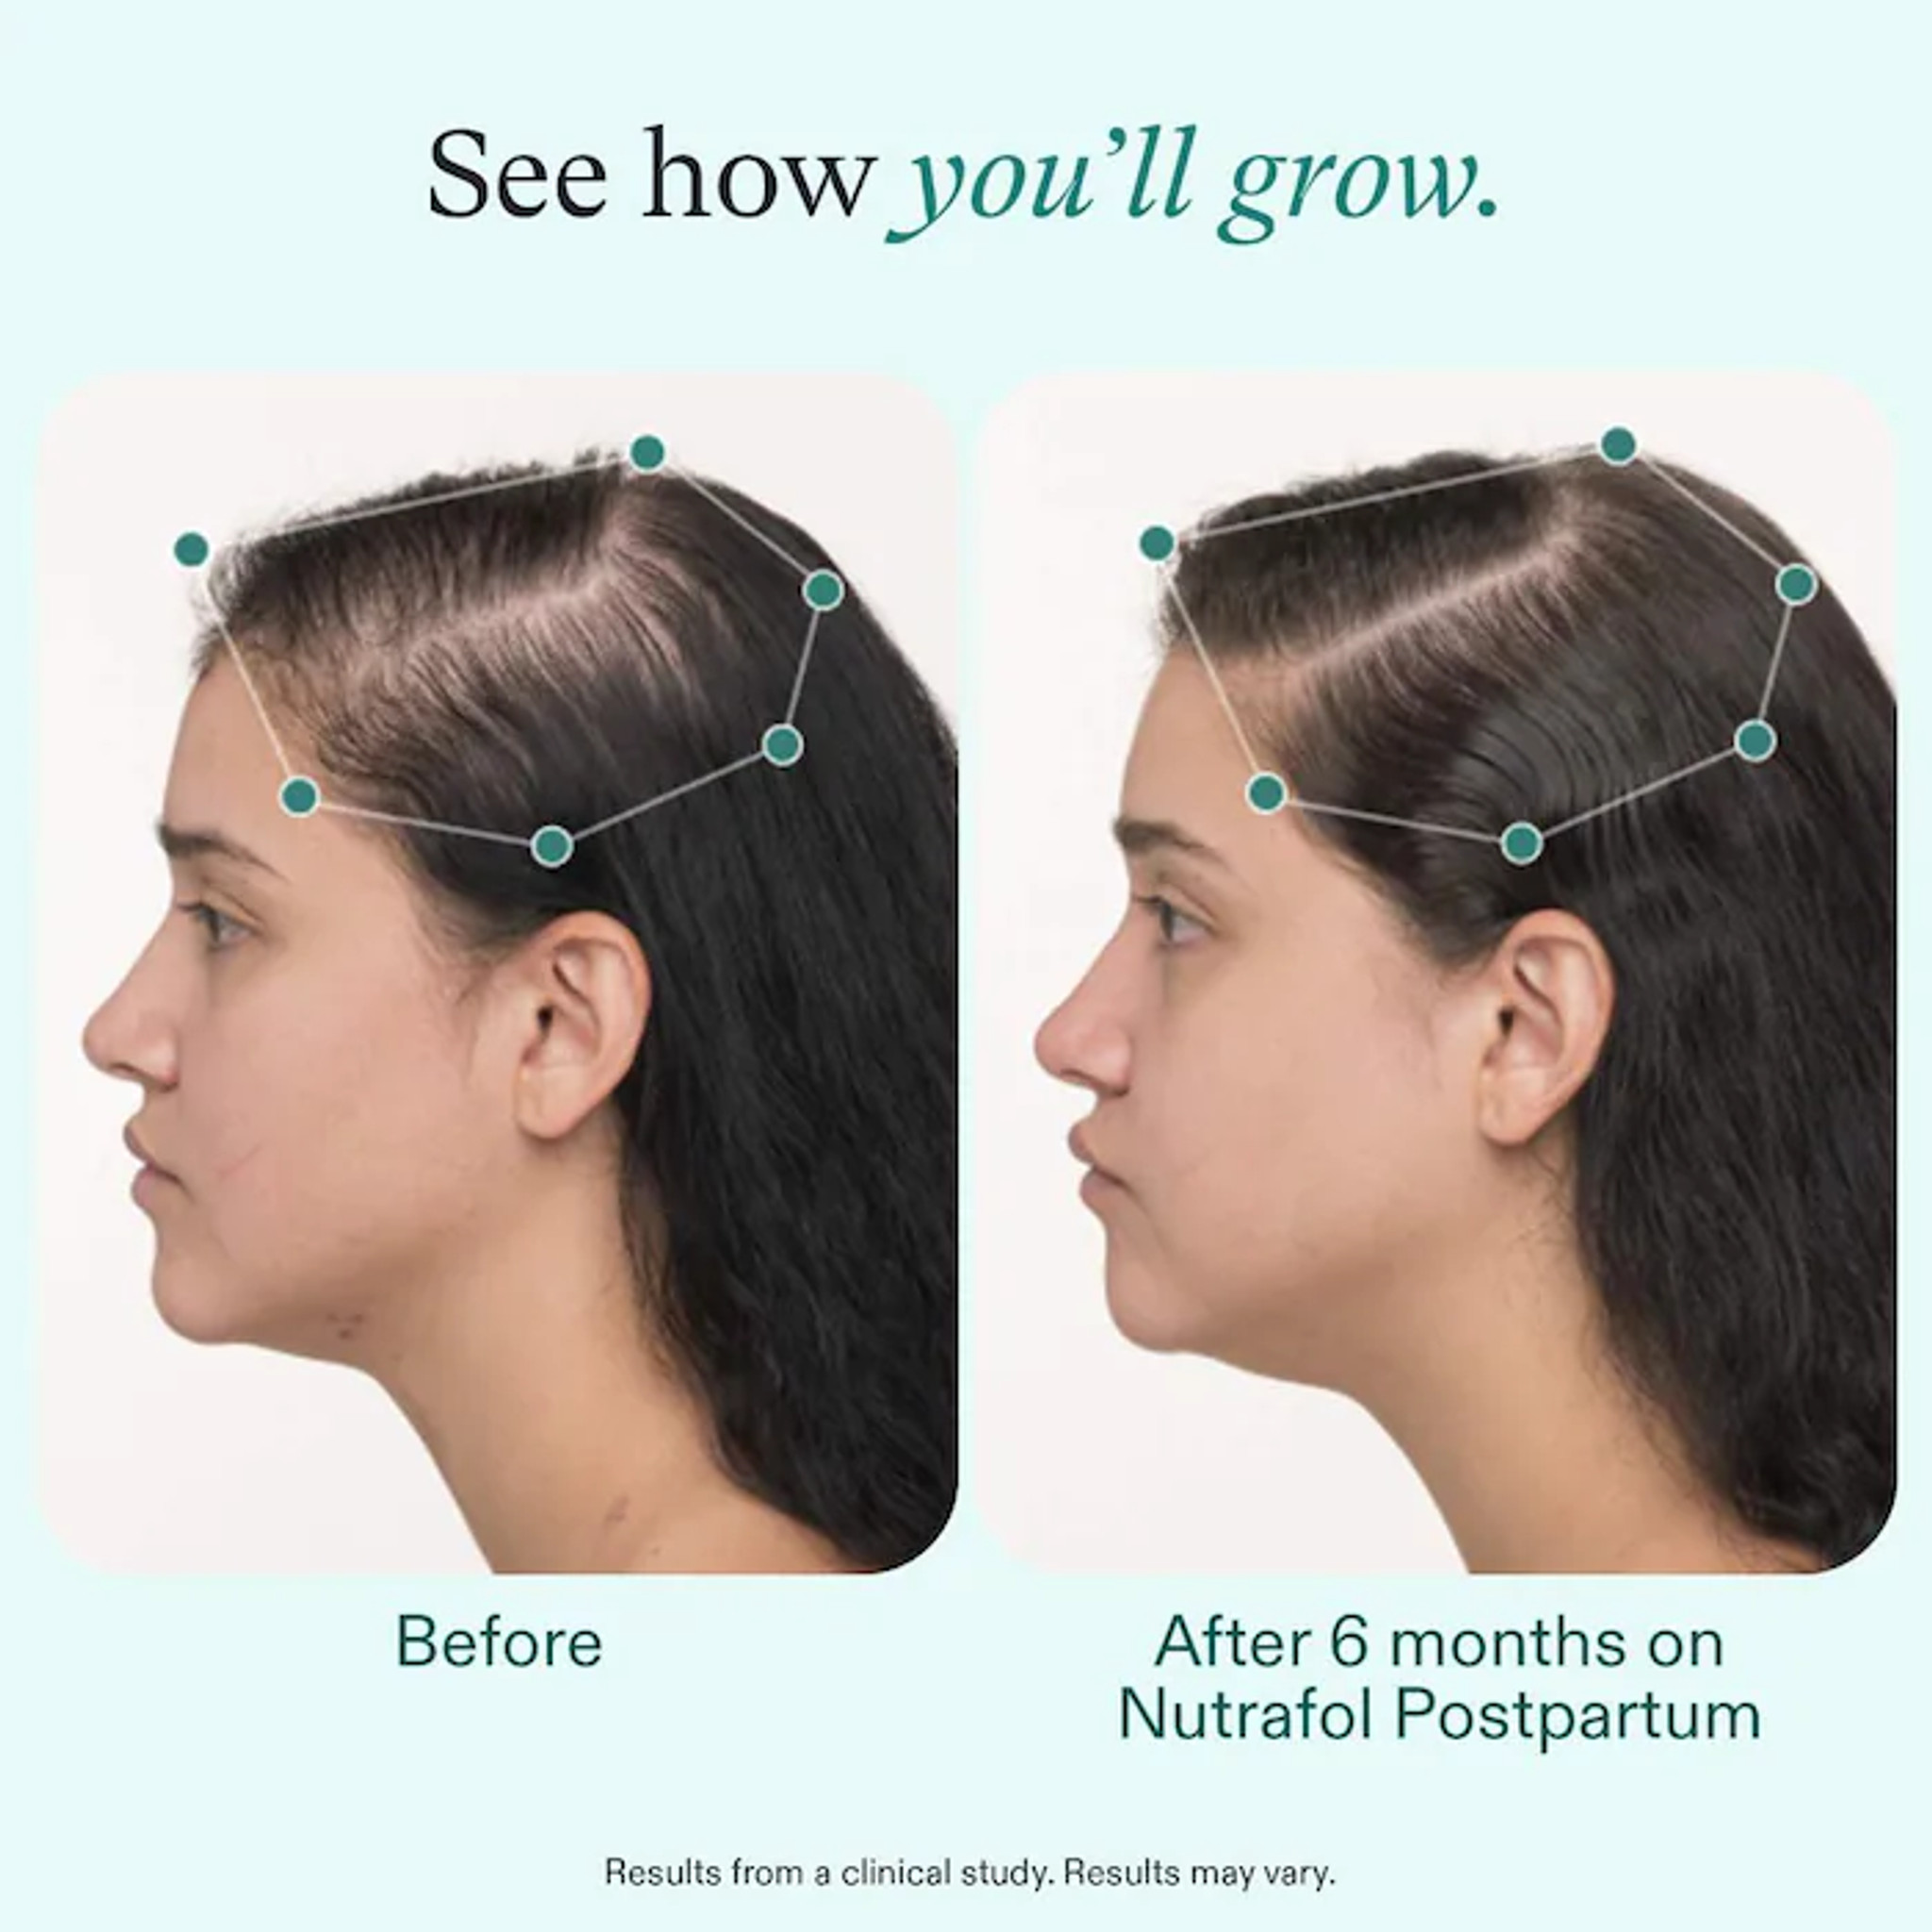 Nutrafol Postpartum Hair Growth Supplement